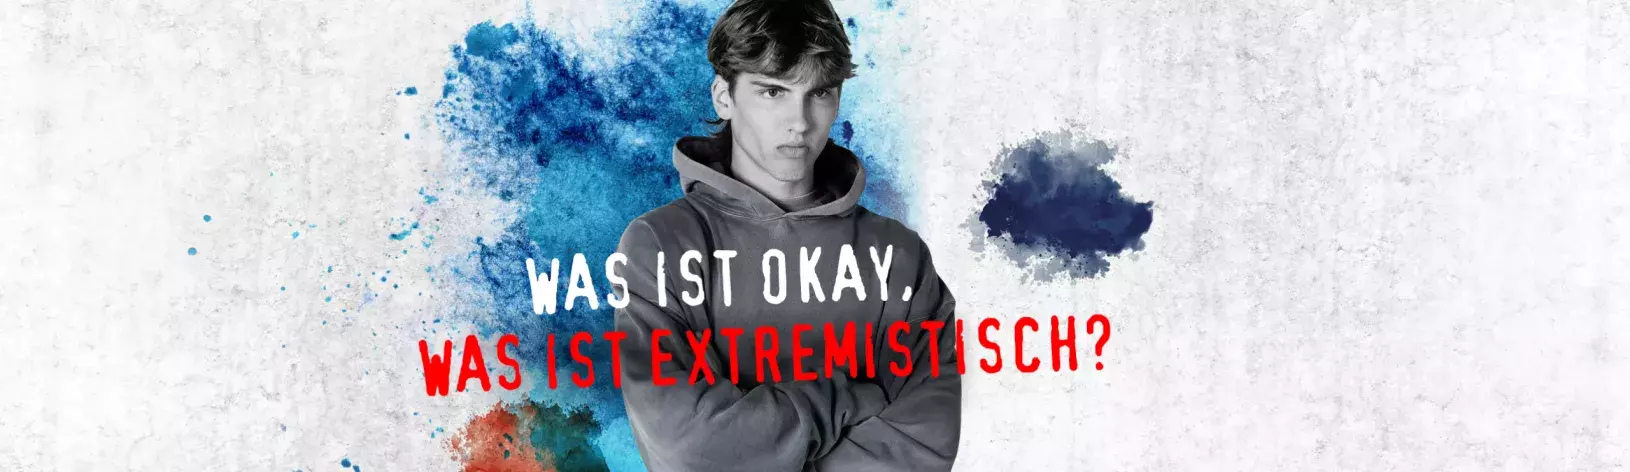 Was ist okay, ws ist extremistisch?